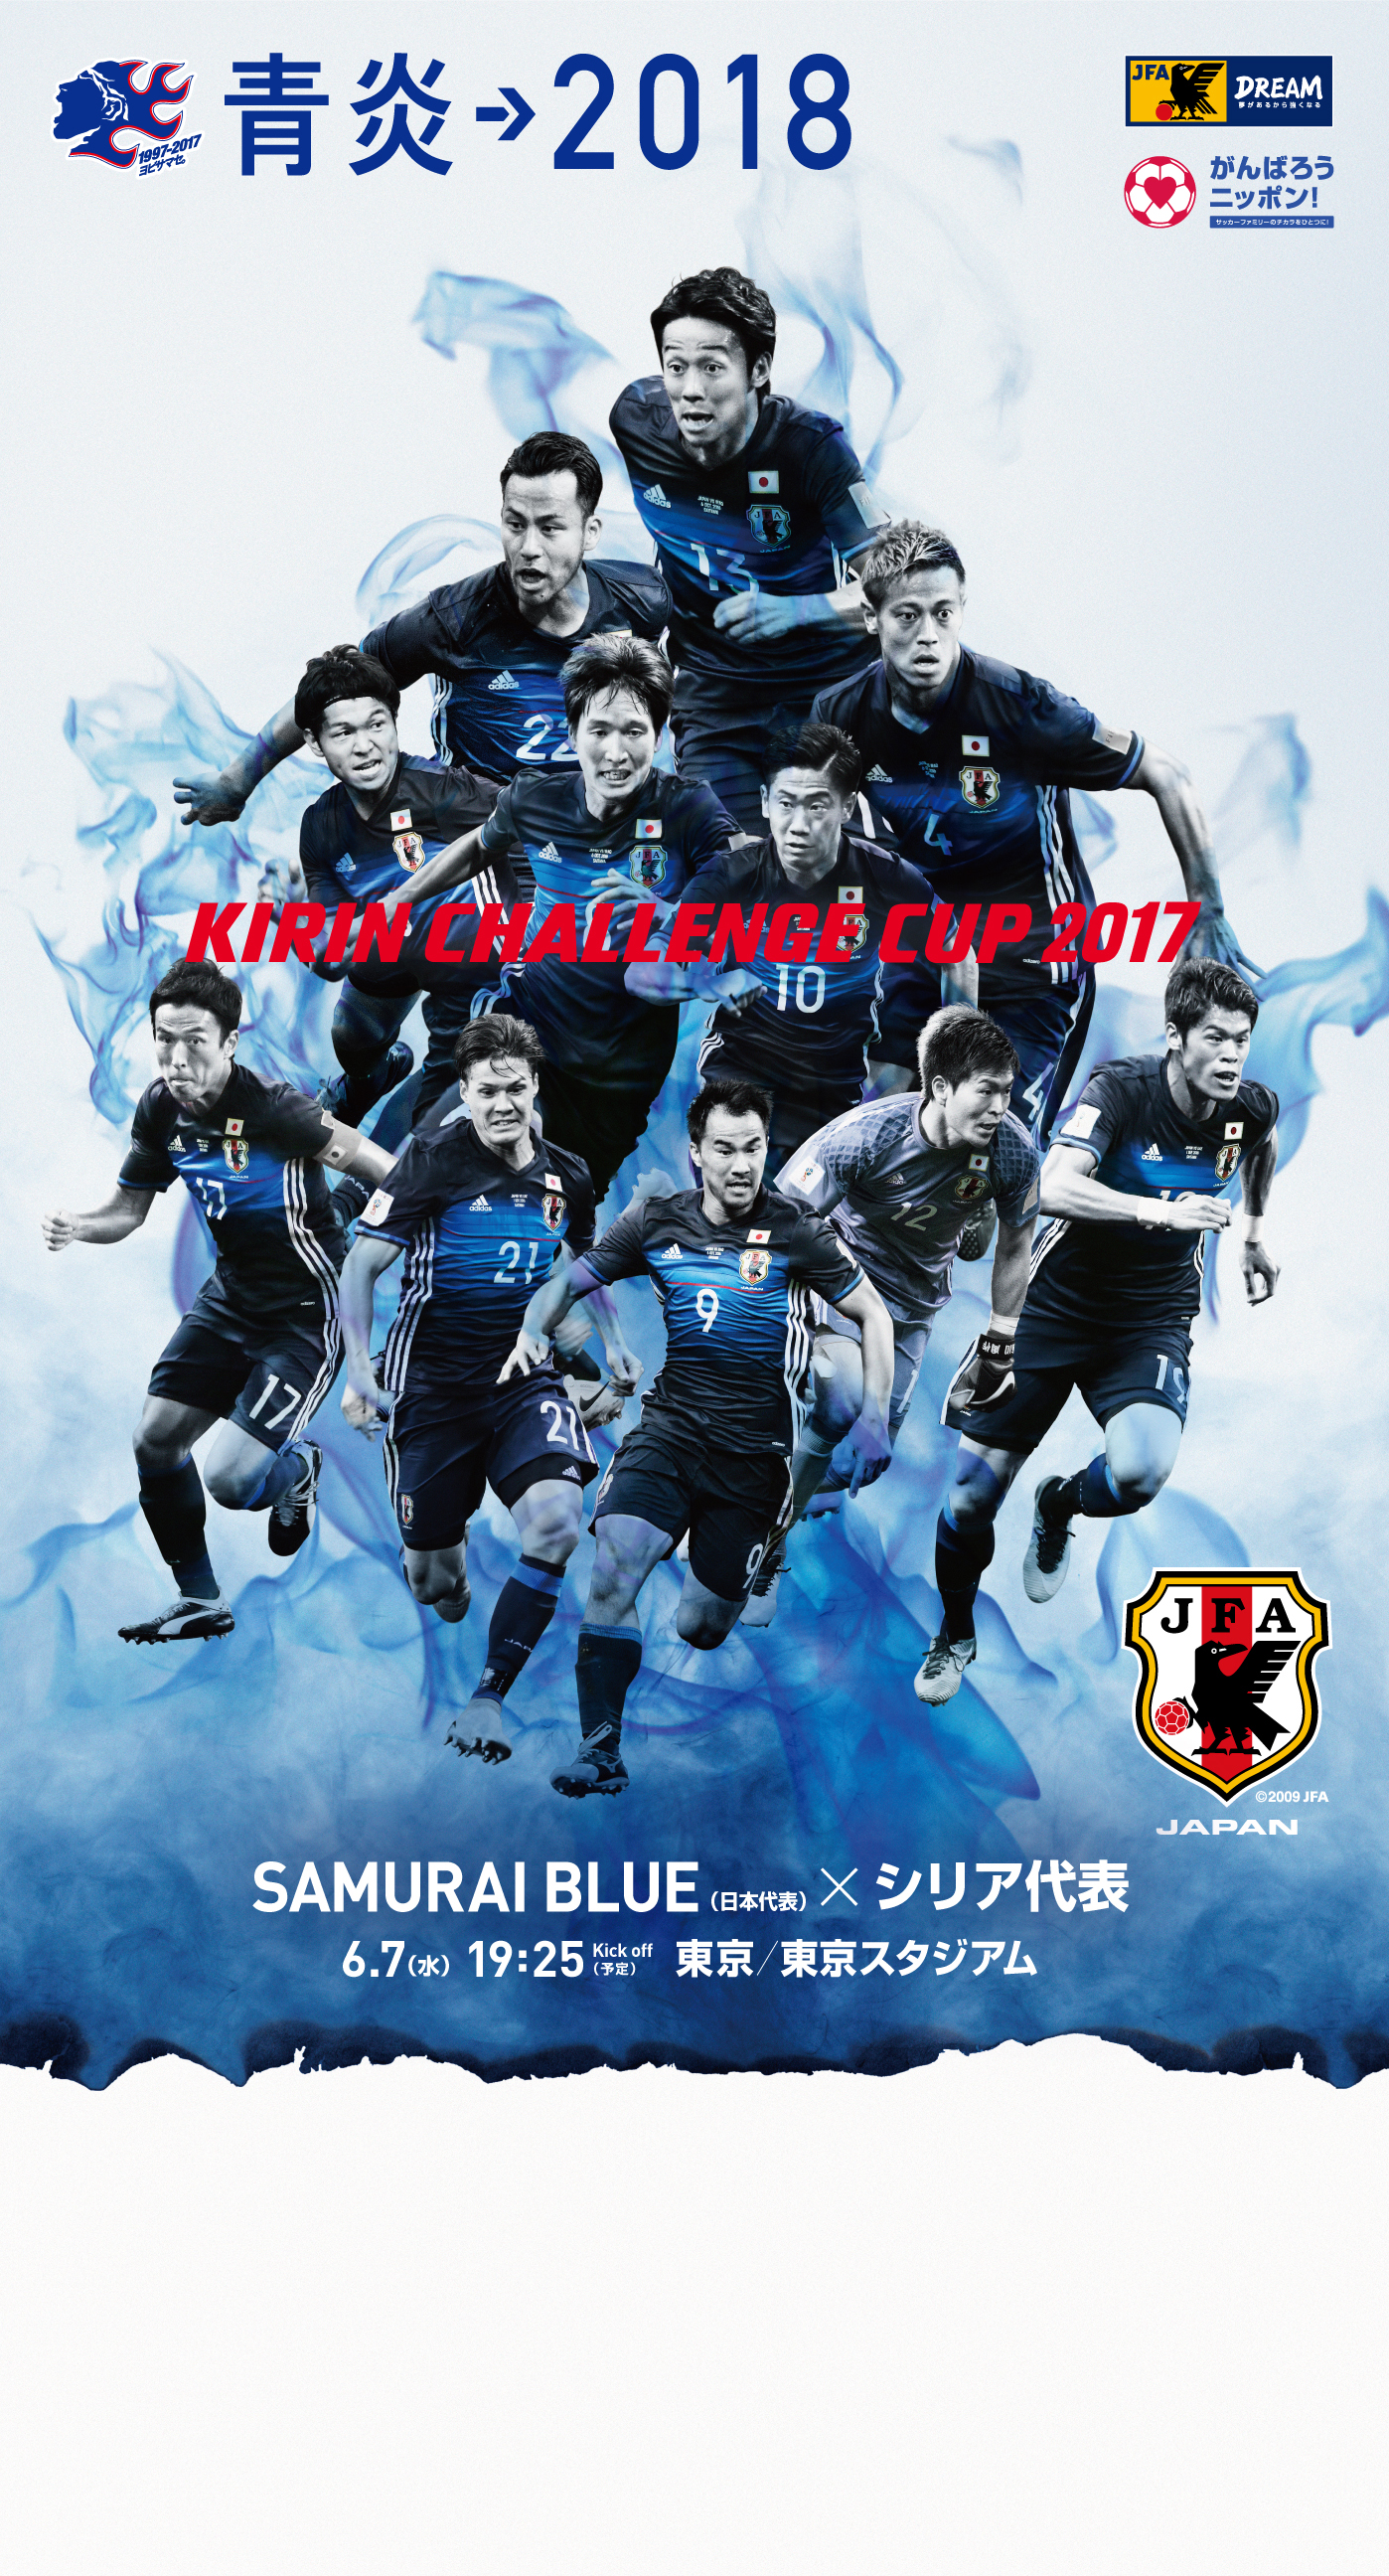 画像をダウンロード 壁紙 サッカー 日本 代表 あなたのためのディズニー画像